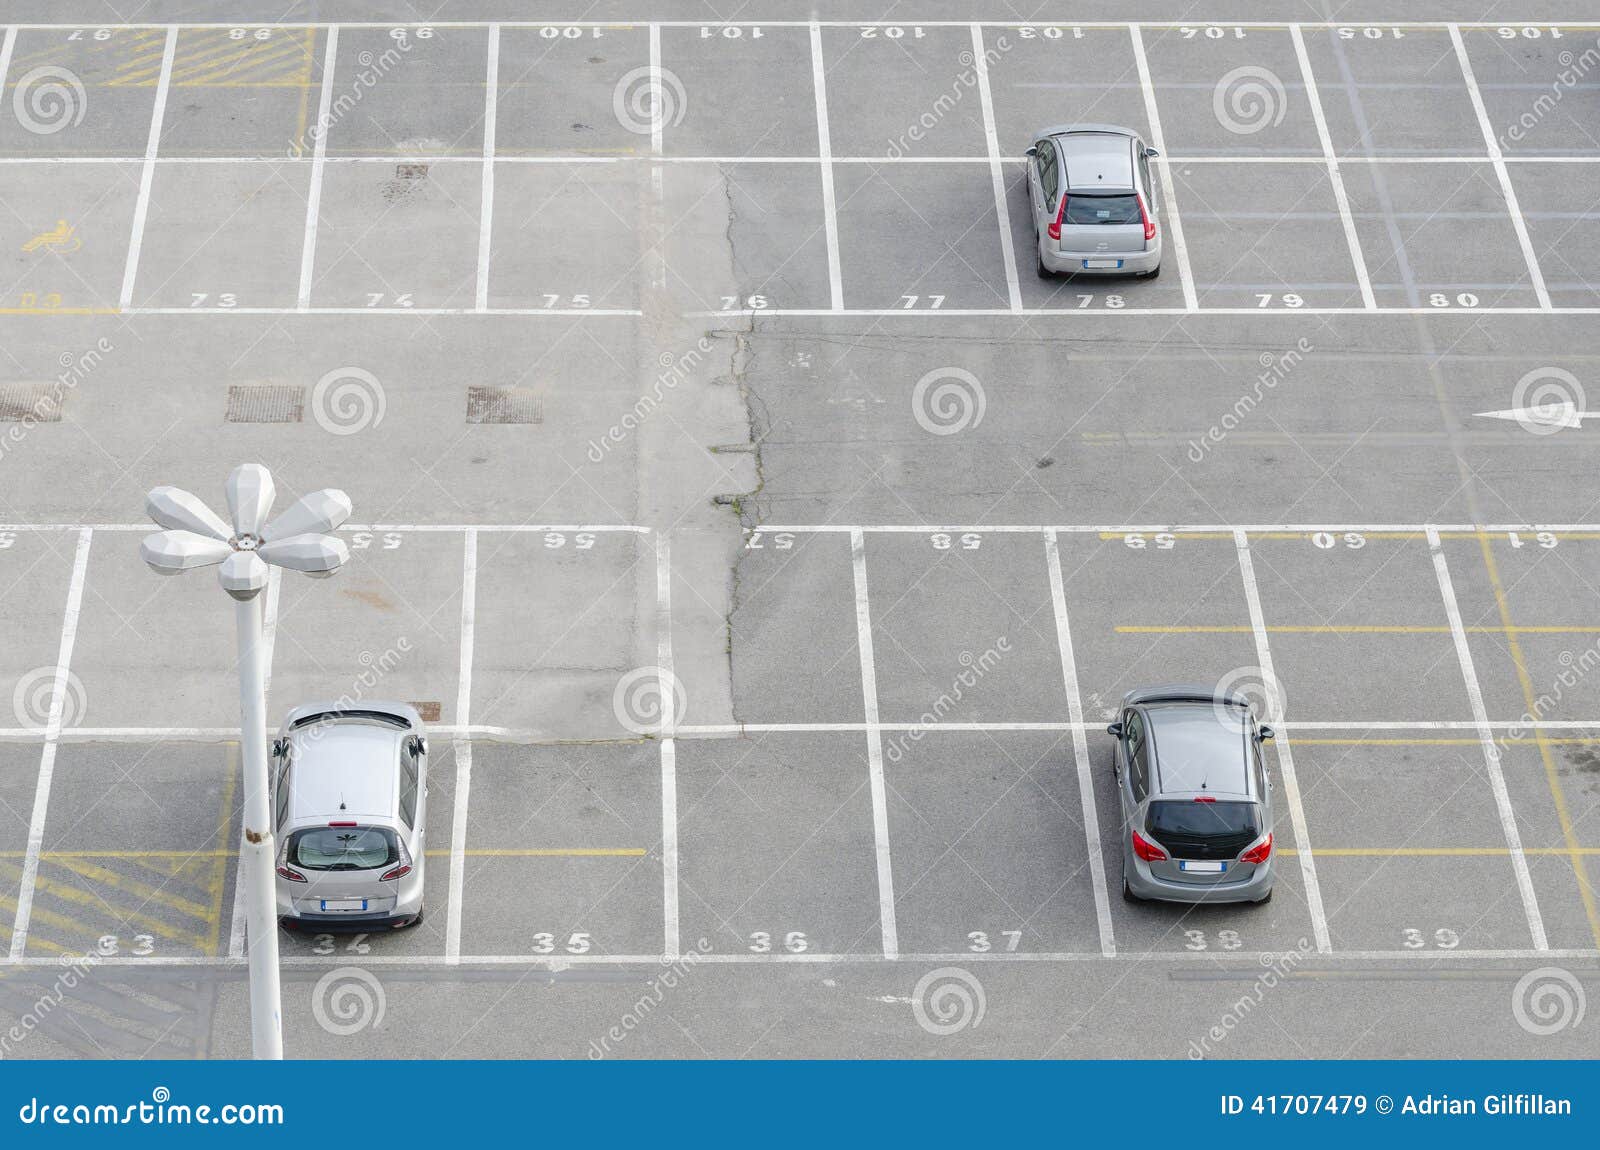 car park bays